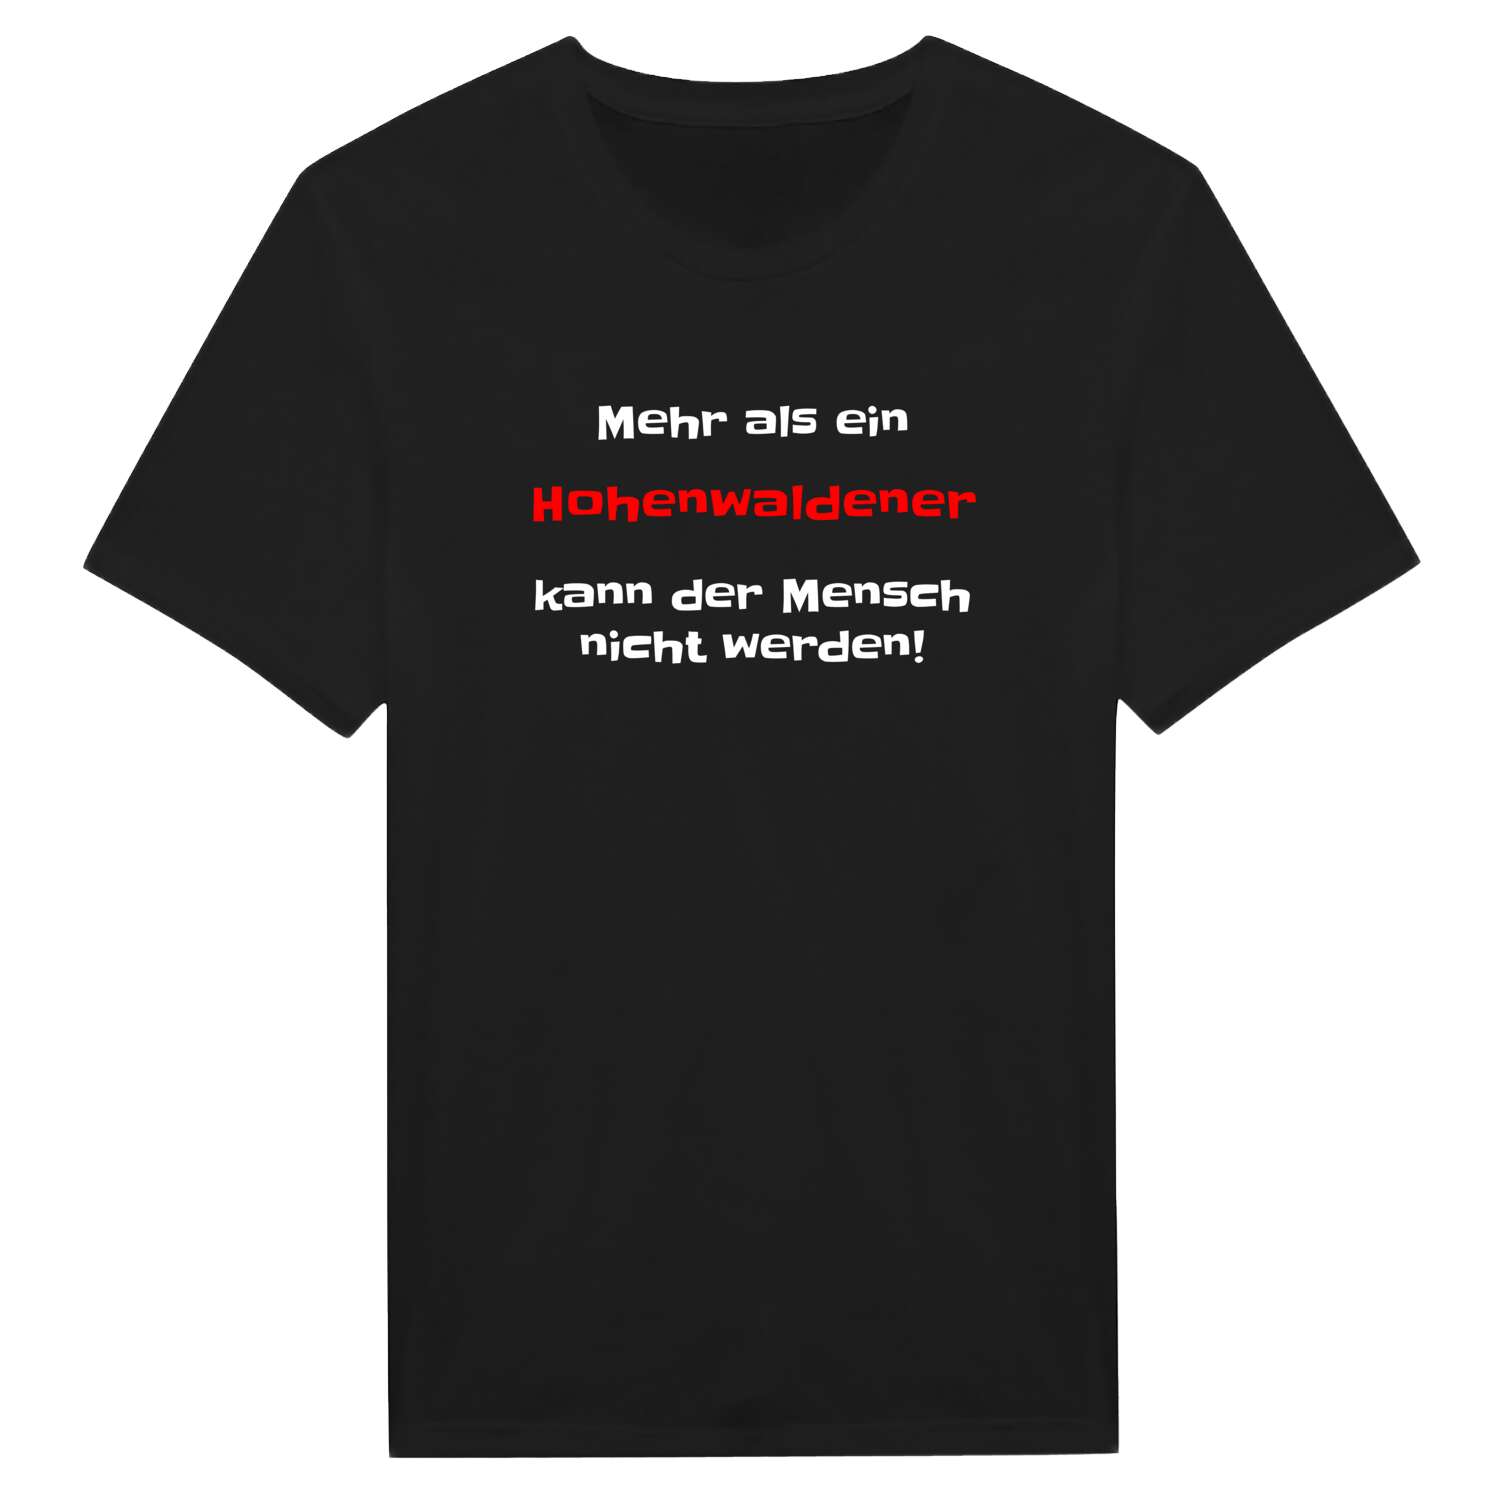 Hohenwalde T-Shirt »Mehr als ein«